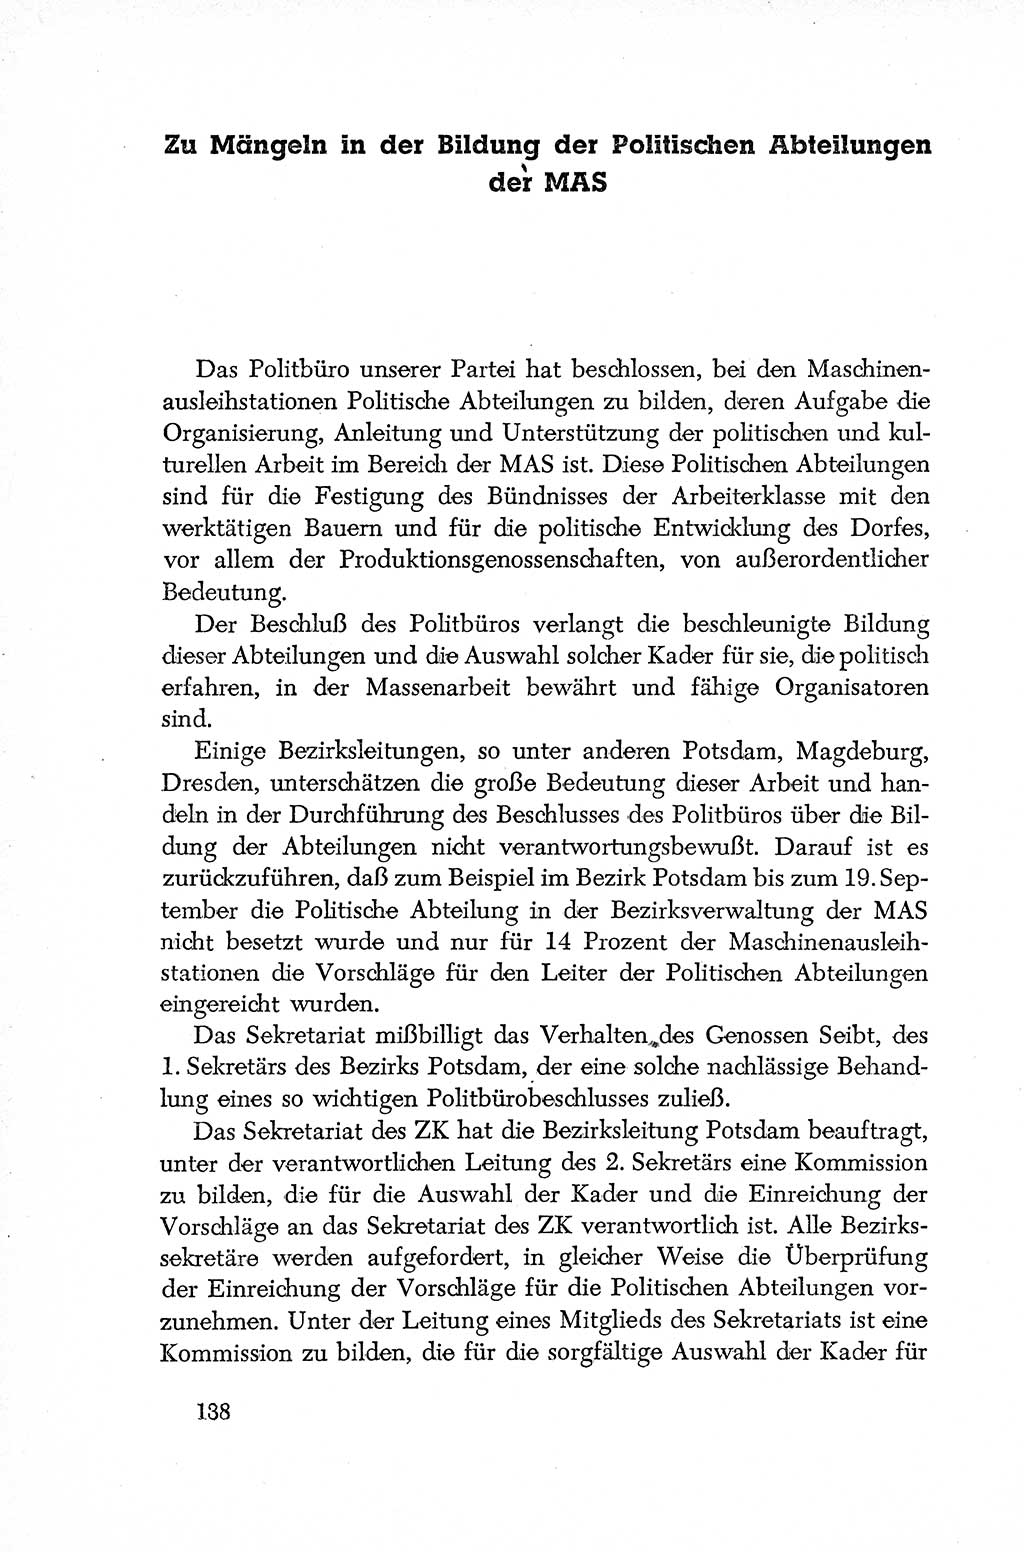 Dokumente der Sozialistischen Einheitspartei Deutschlands (SED) [Deutsche Demokratische Republik (DDR)] 1952-1953, Seite 138 (Dok. SED DDR 1952-1953, S. 138)